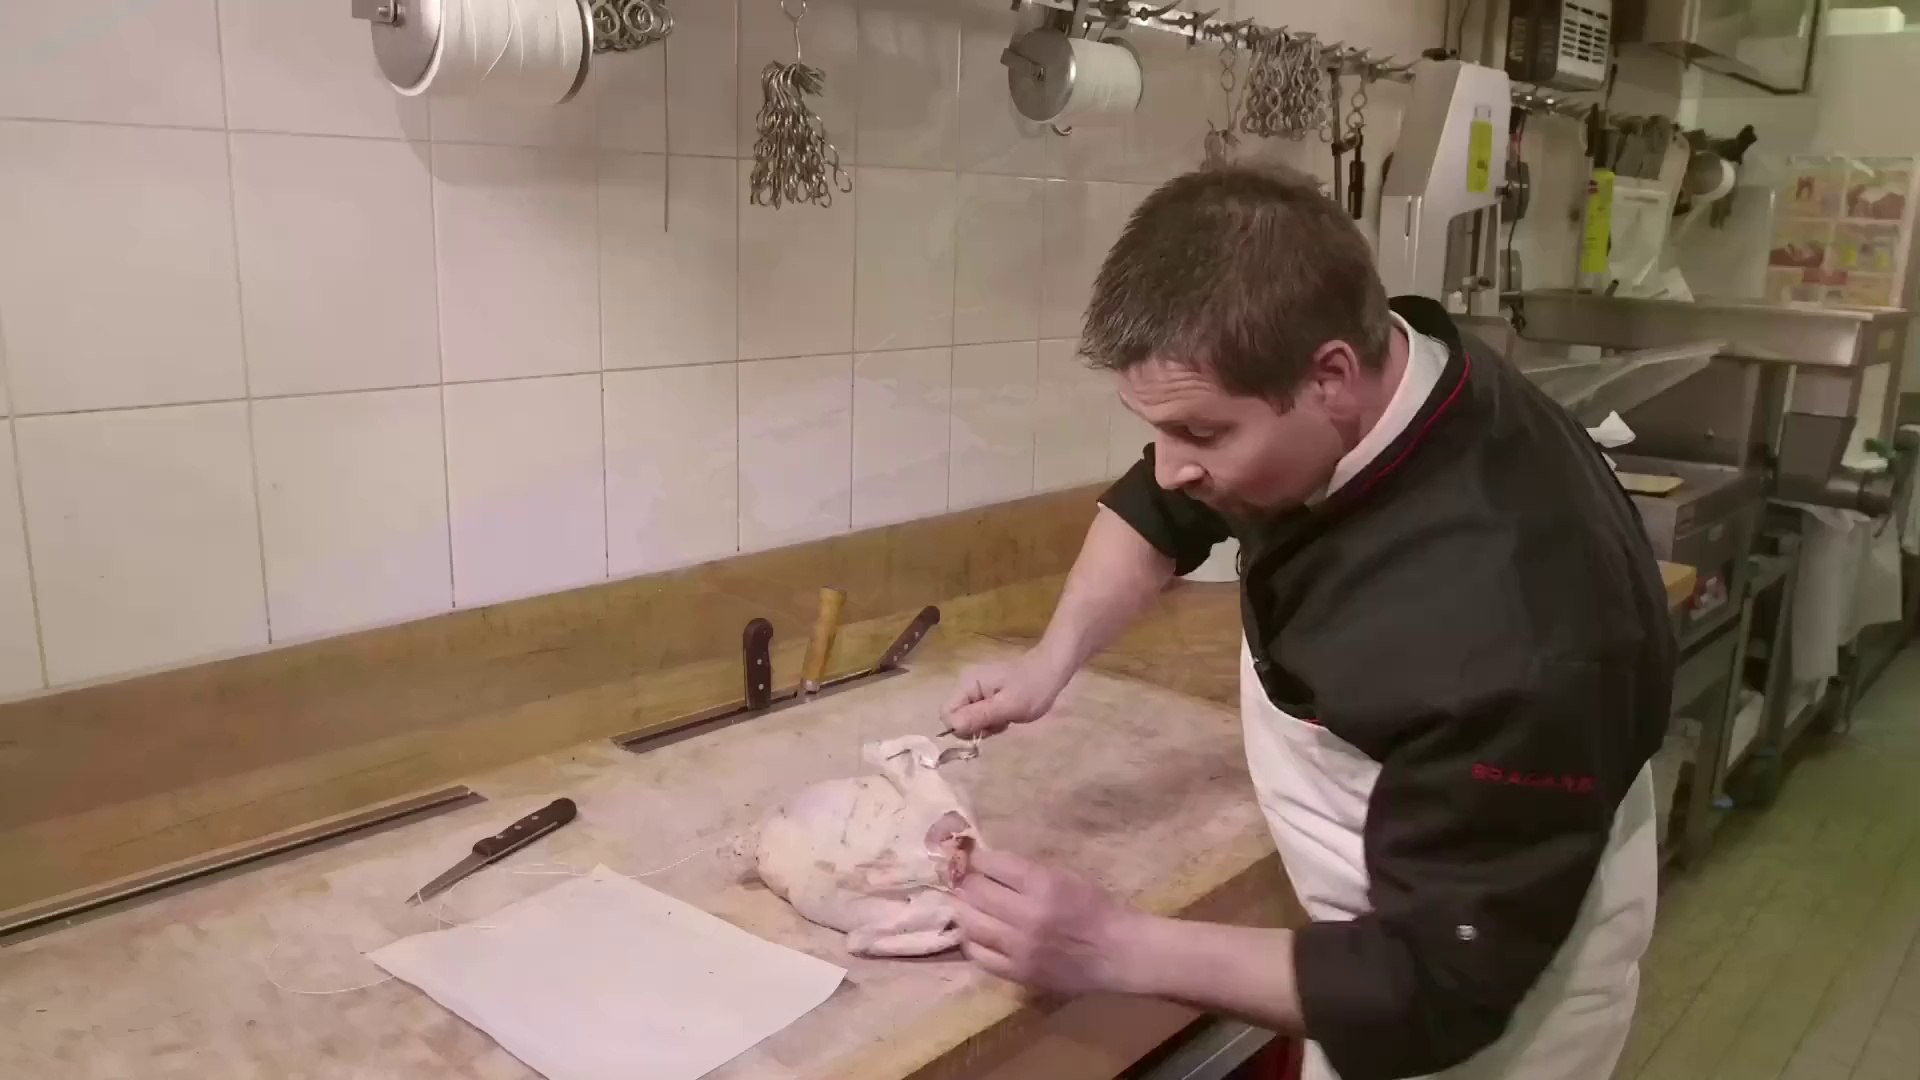 Cuisine : Brider une volaille avec une aiguille - Vidéo Dailymotion